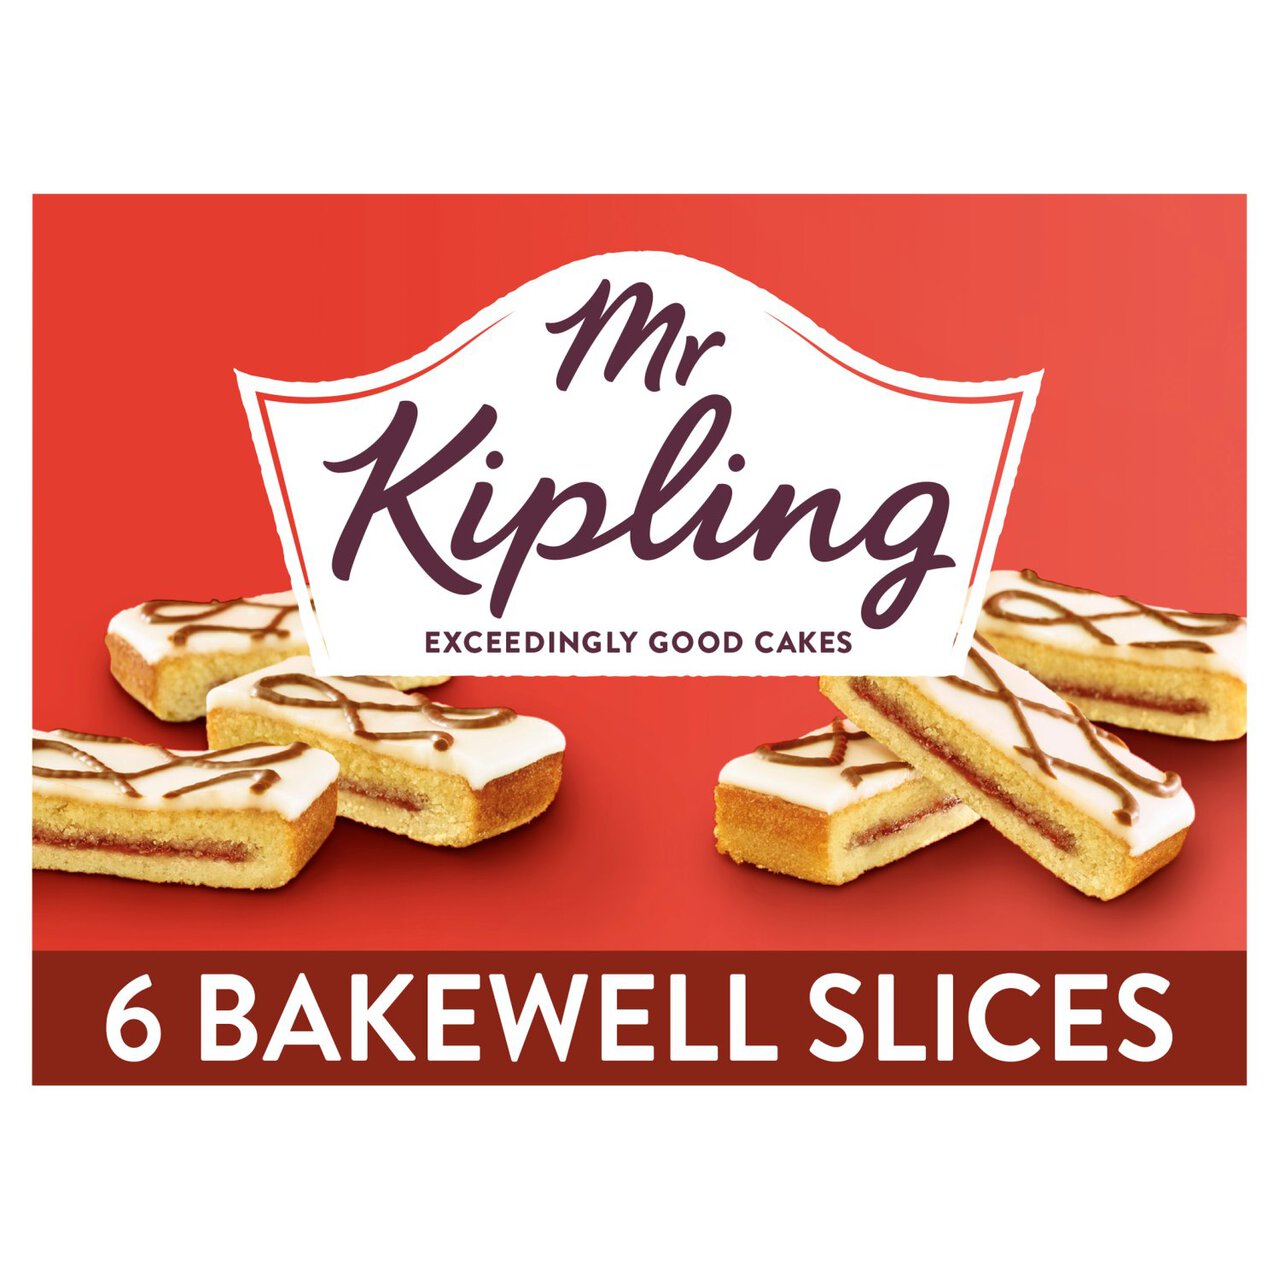 Mr Kipling Bakewell Slices 6 per pack